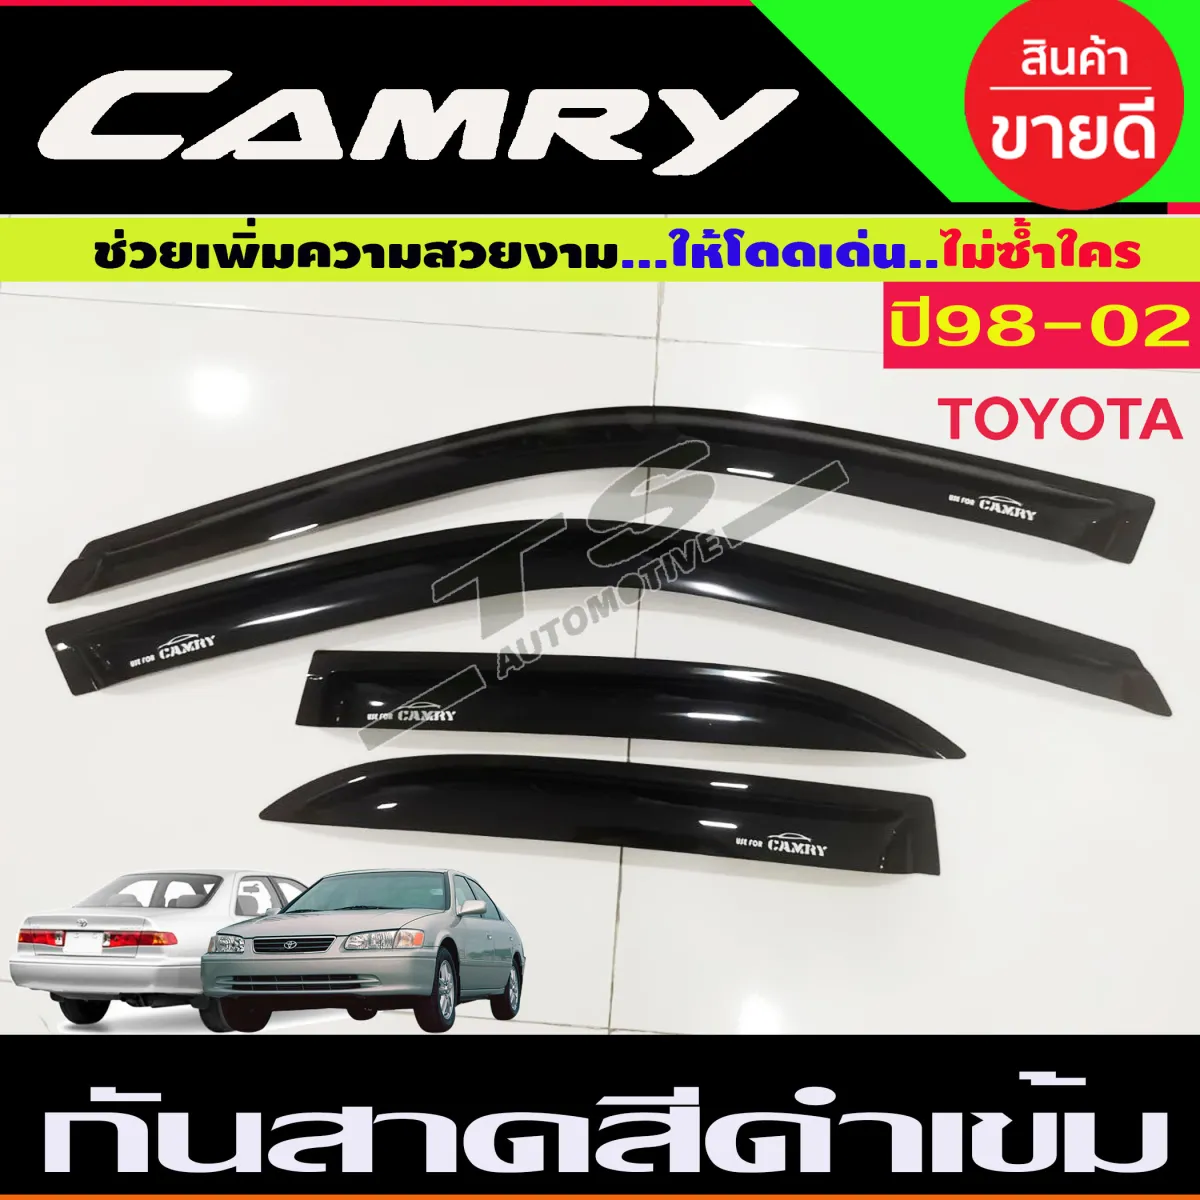 กันสาดคัมรี่ Toyota Camry ปี 2000-2002 | Lazada.Co.Th